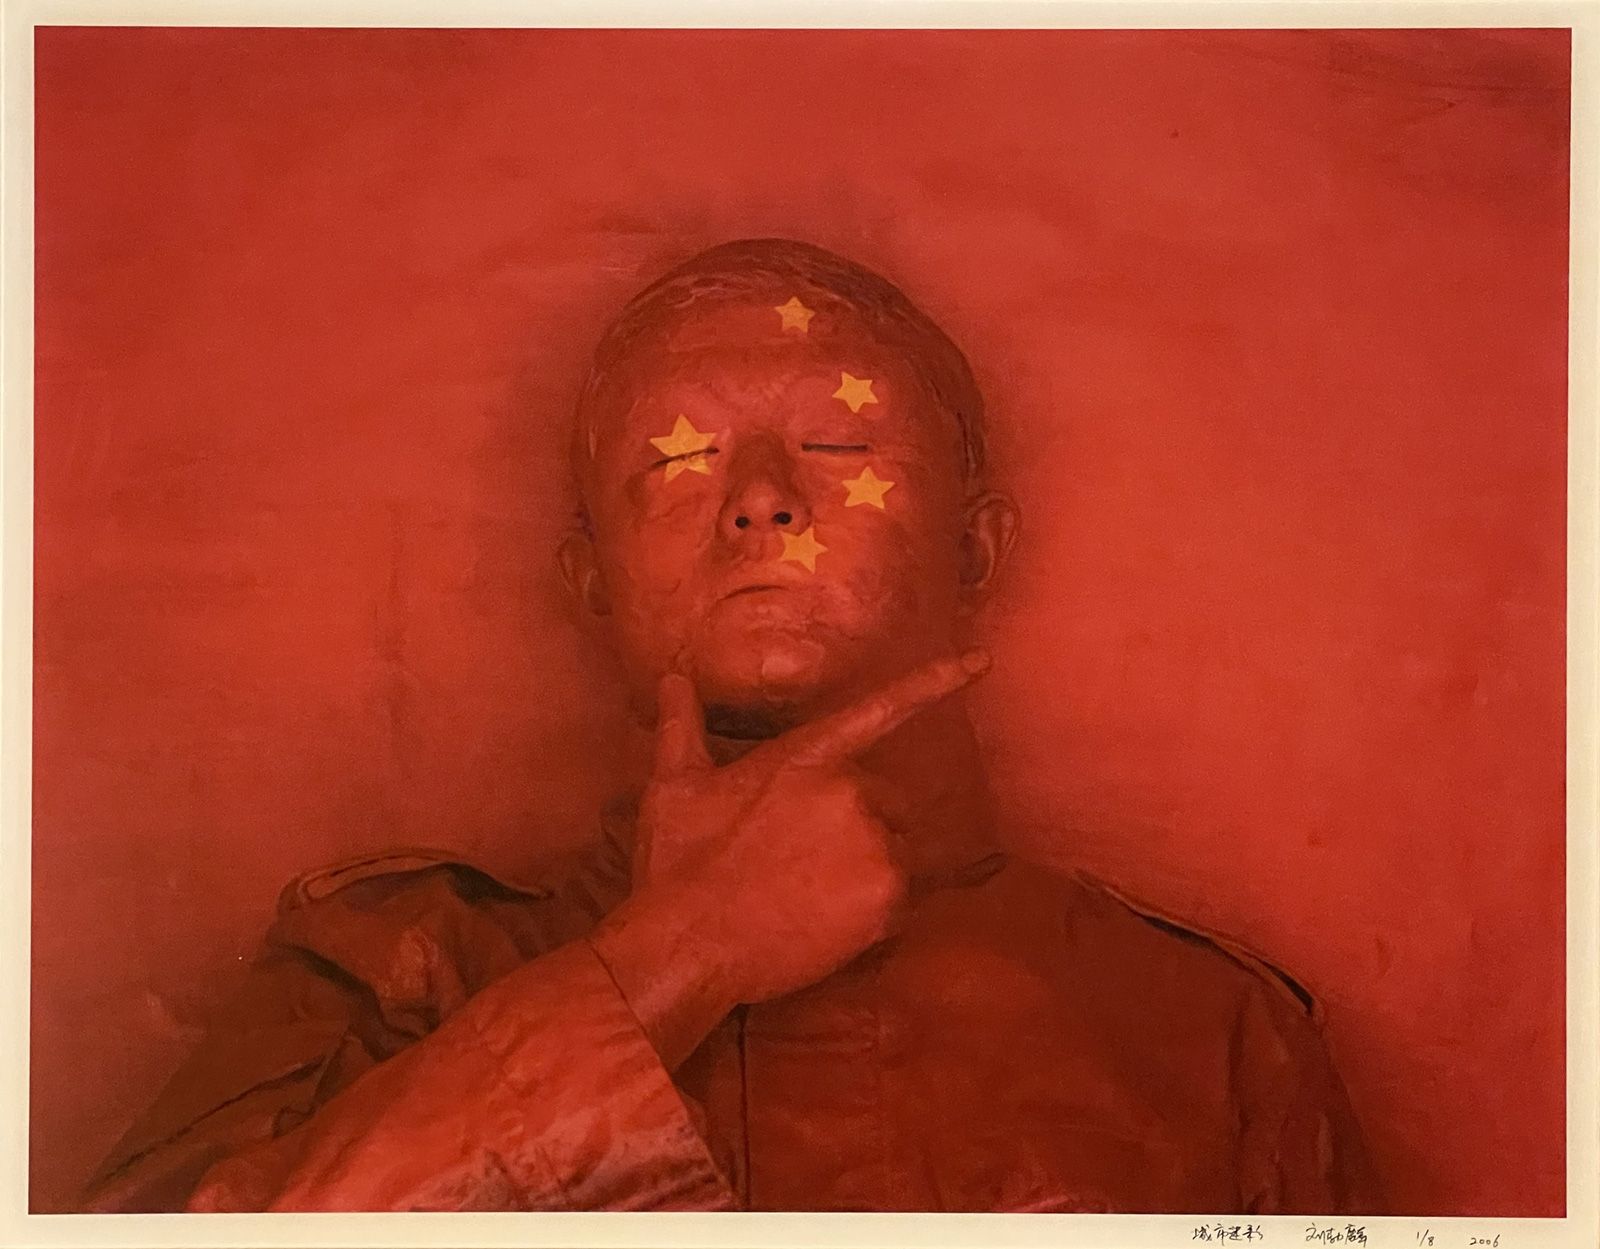 LIU BOLIN (1973) 
Red Flag, Autoportrait, pour la série Hide in the city, 2006

&hellip;